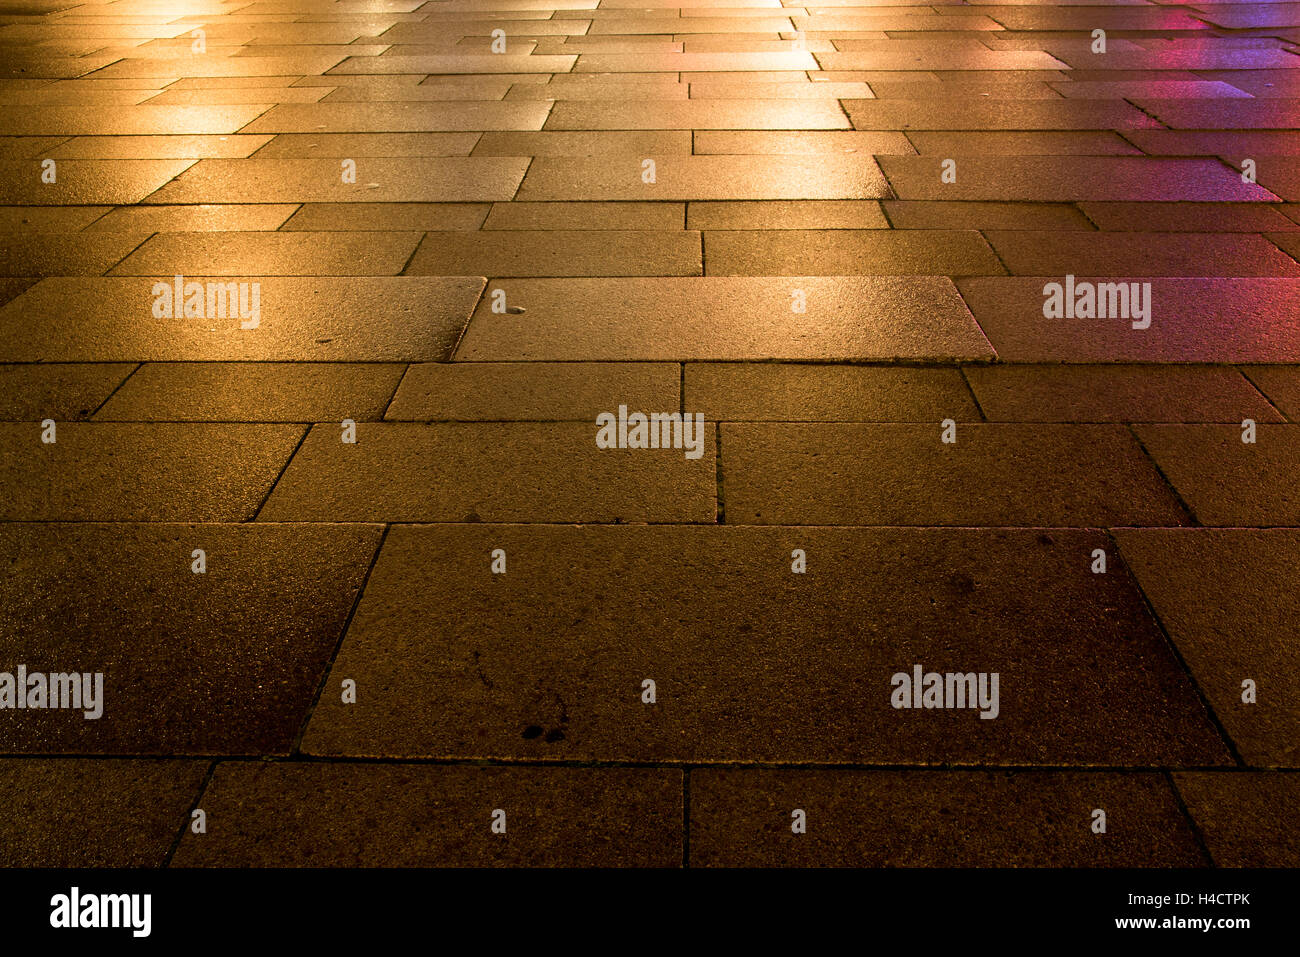 La riflessione delle luci sul pavimento bagnato nella città Foto Stock